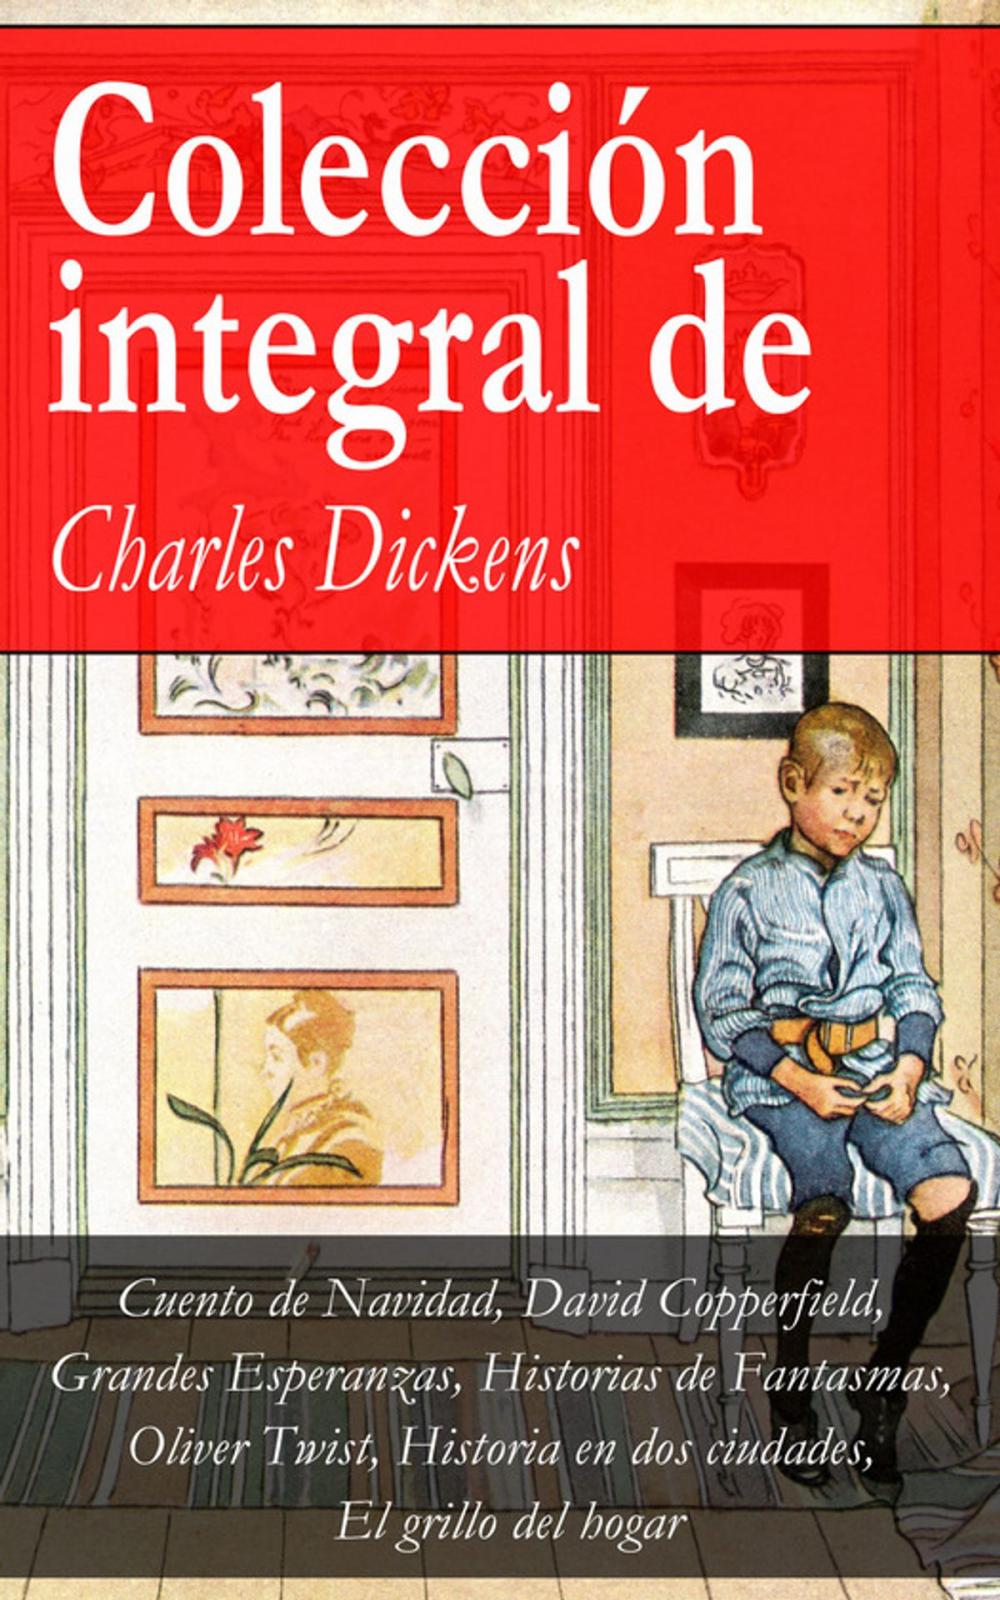 Big bigCover of Colección integral de Charles Dickens